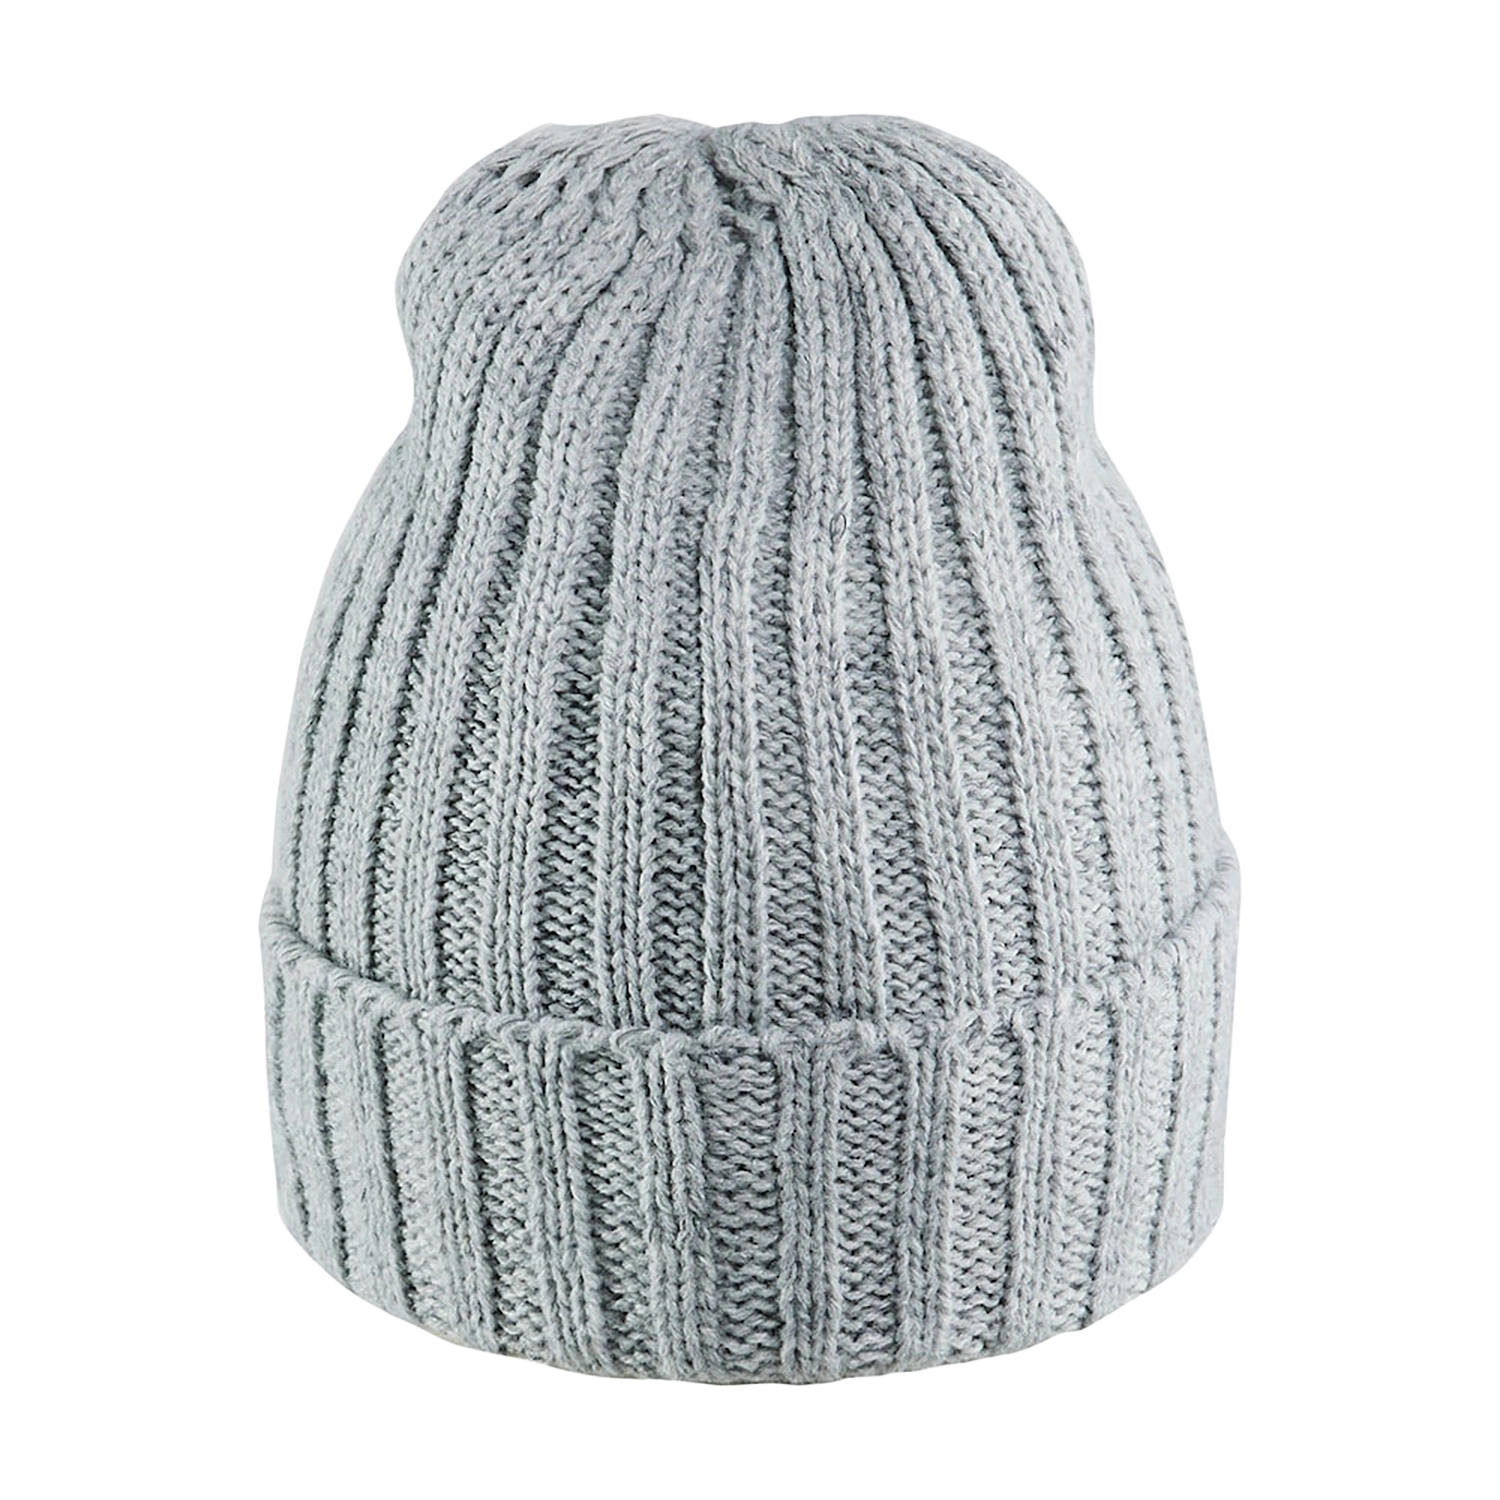 Bonnet tricoté réfléchissant 2027/2802/9291 - gris chiné taille unique